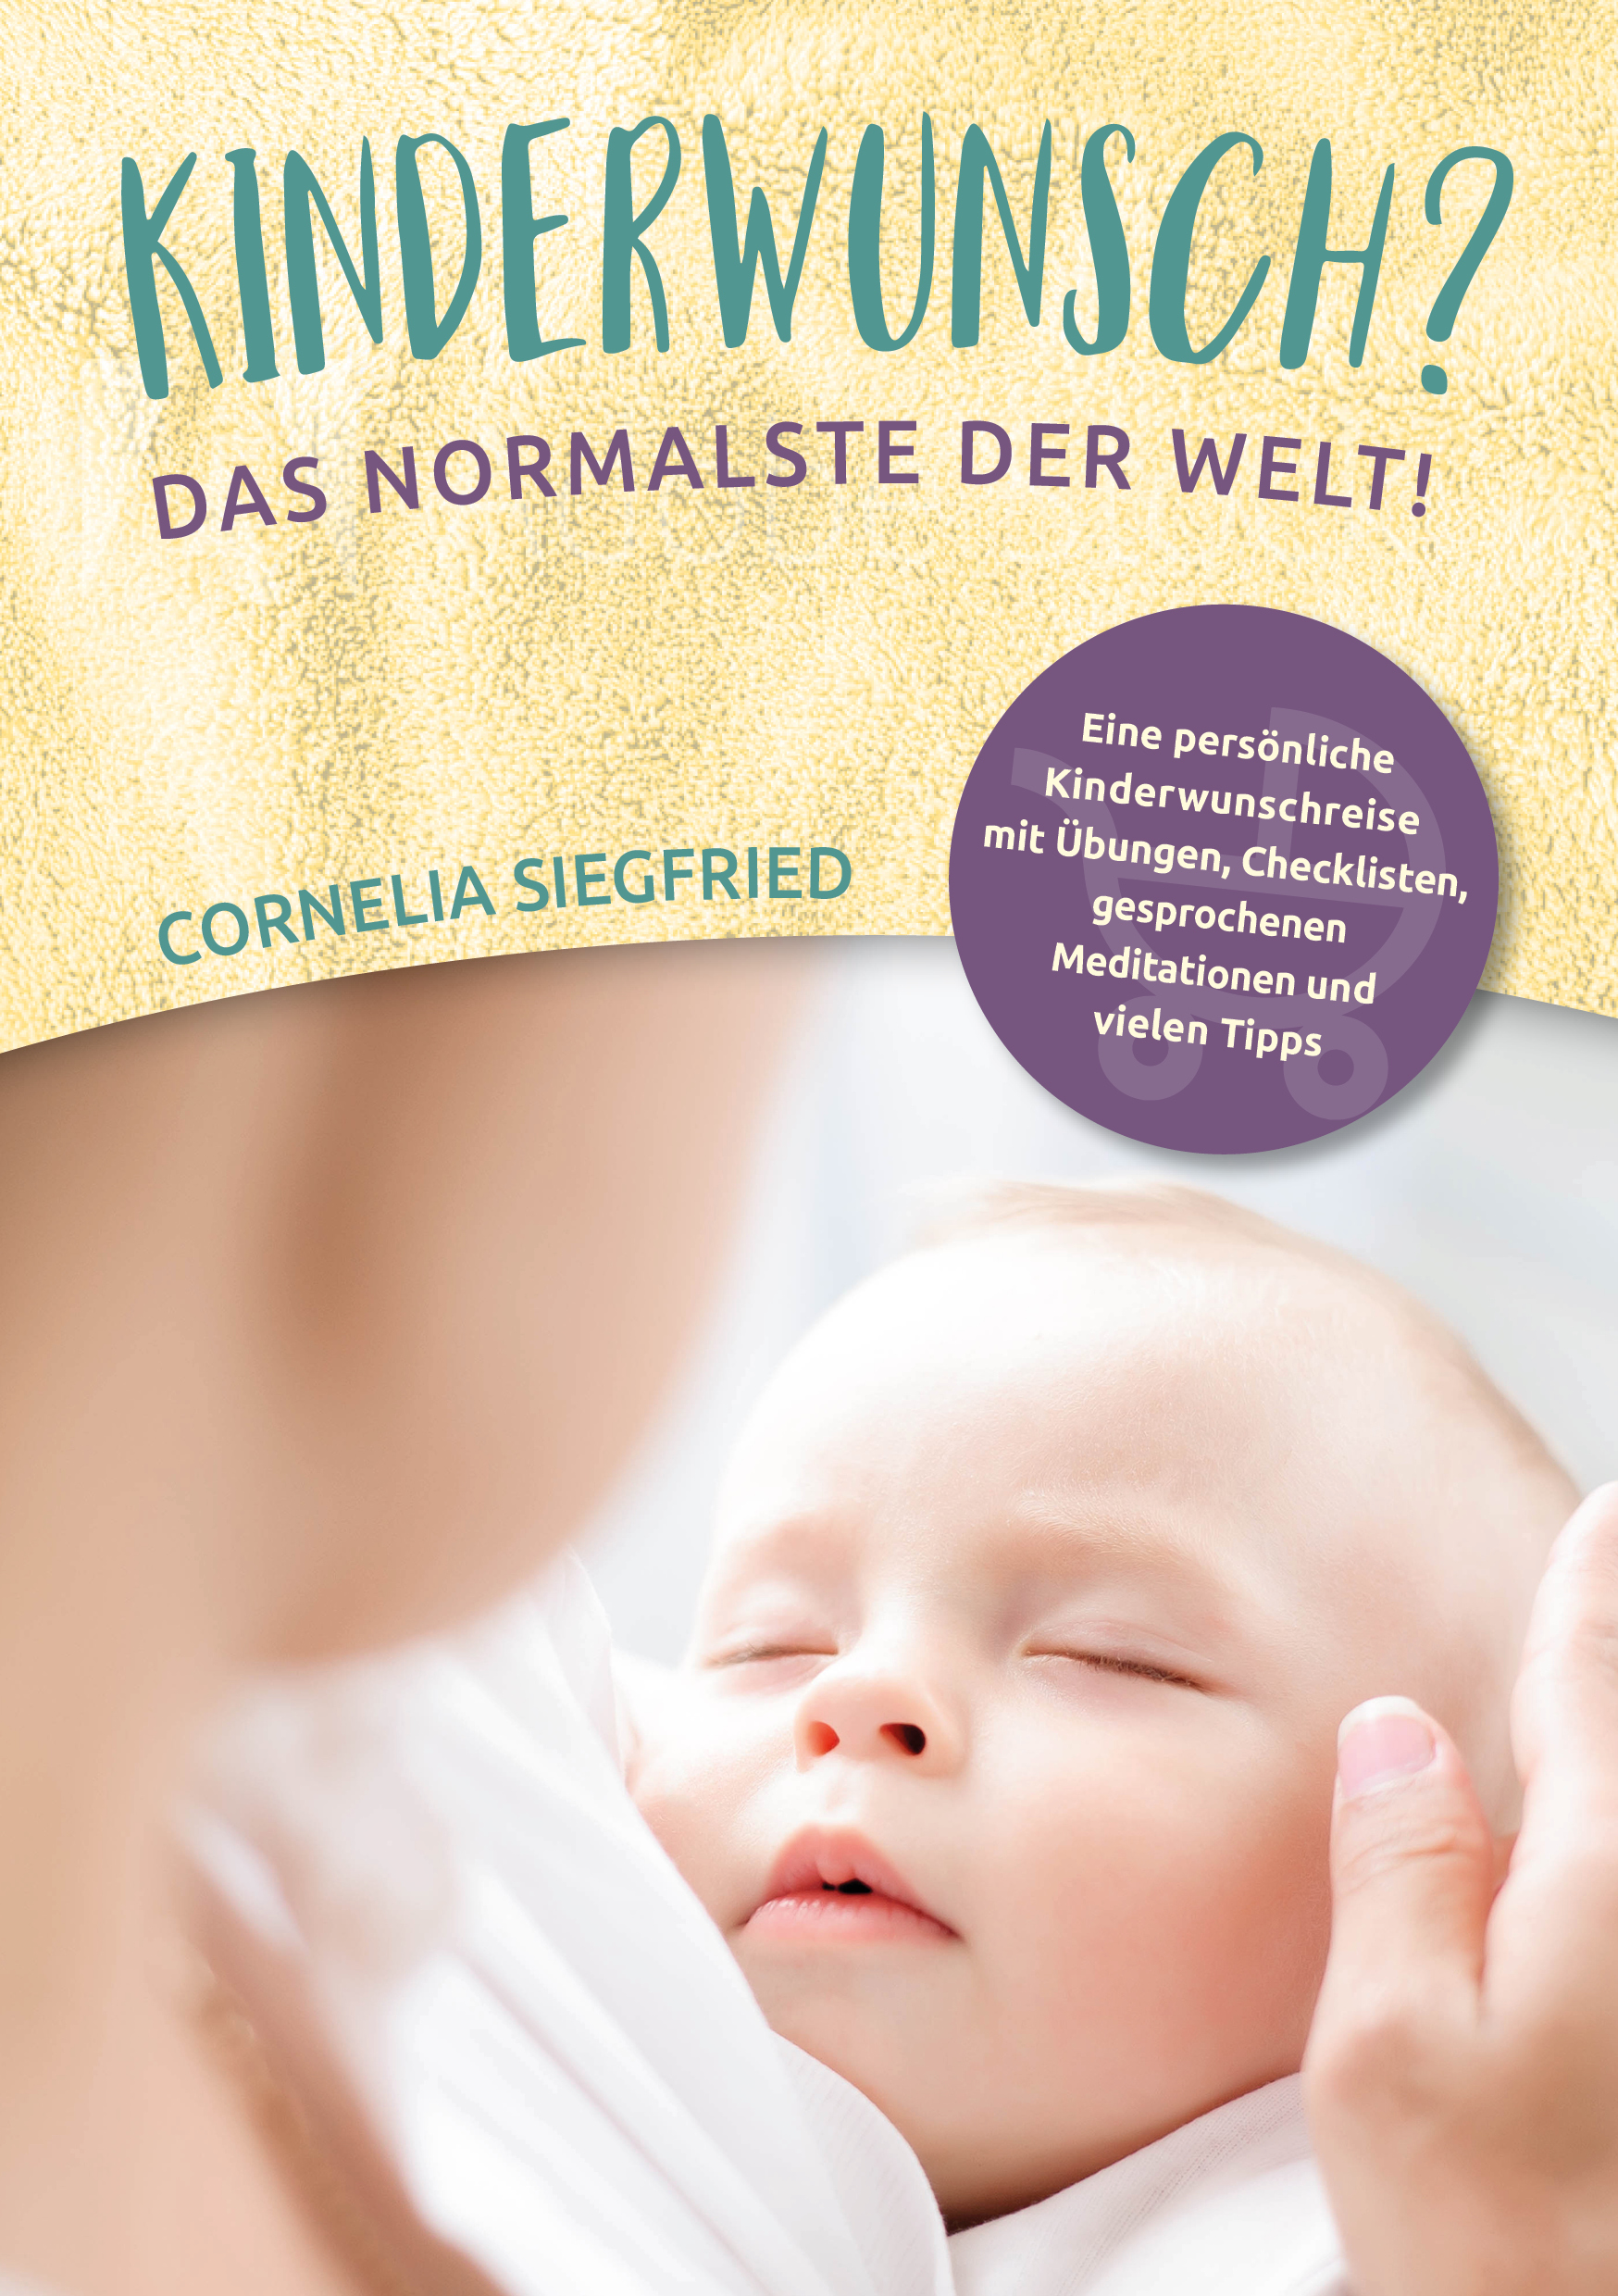 Das Kinderwunsch Buch von Cornelia Siegfried - Kinderwunsch Coach mit langjähriger Erfahrung